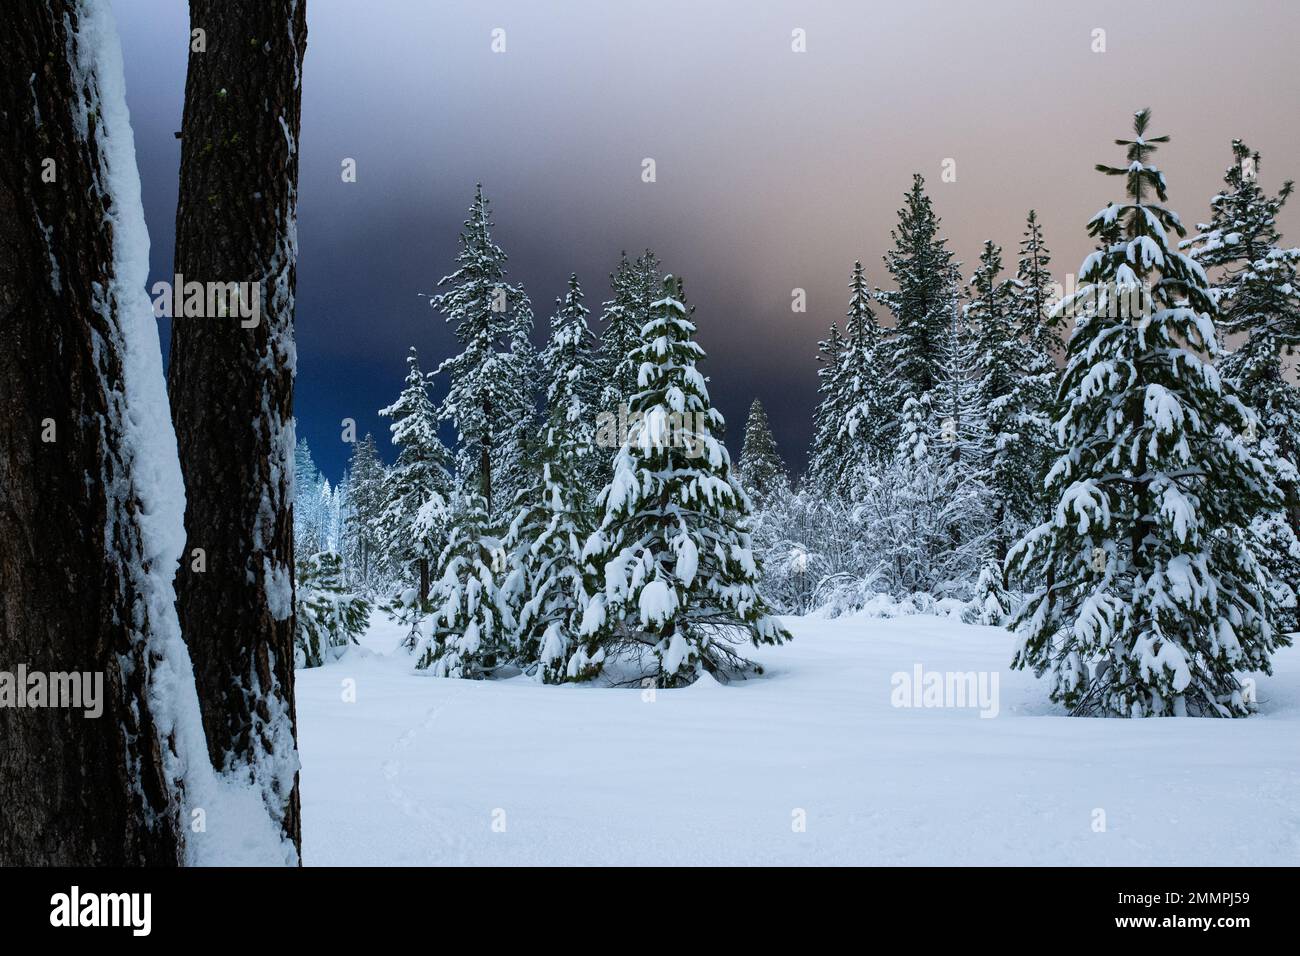 Paysage forestier d'hiver et de neige - Californie Banque D'Images